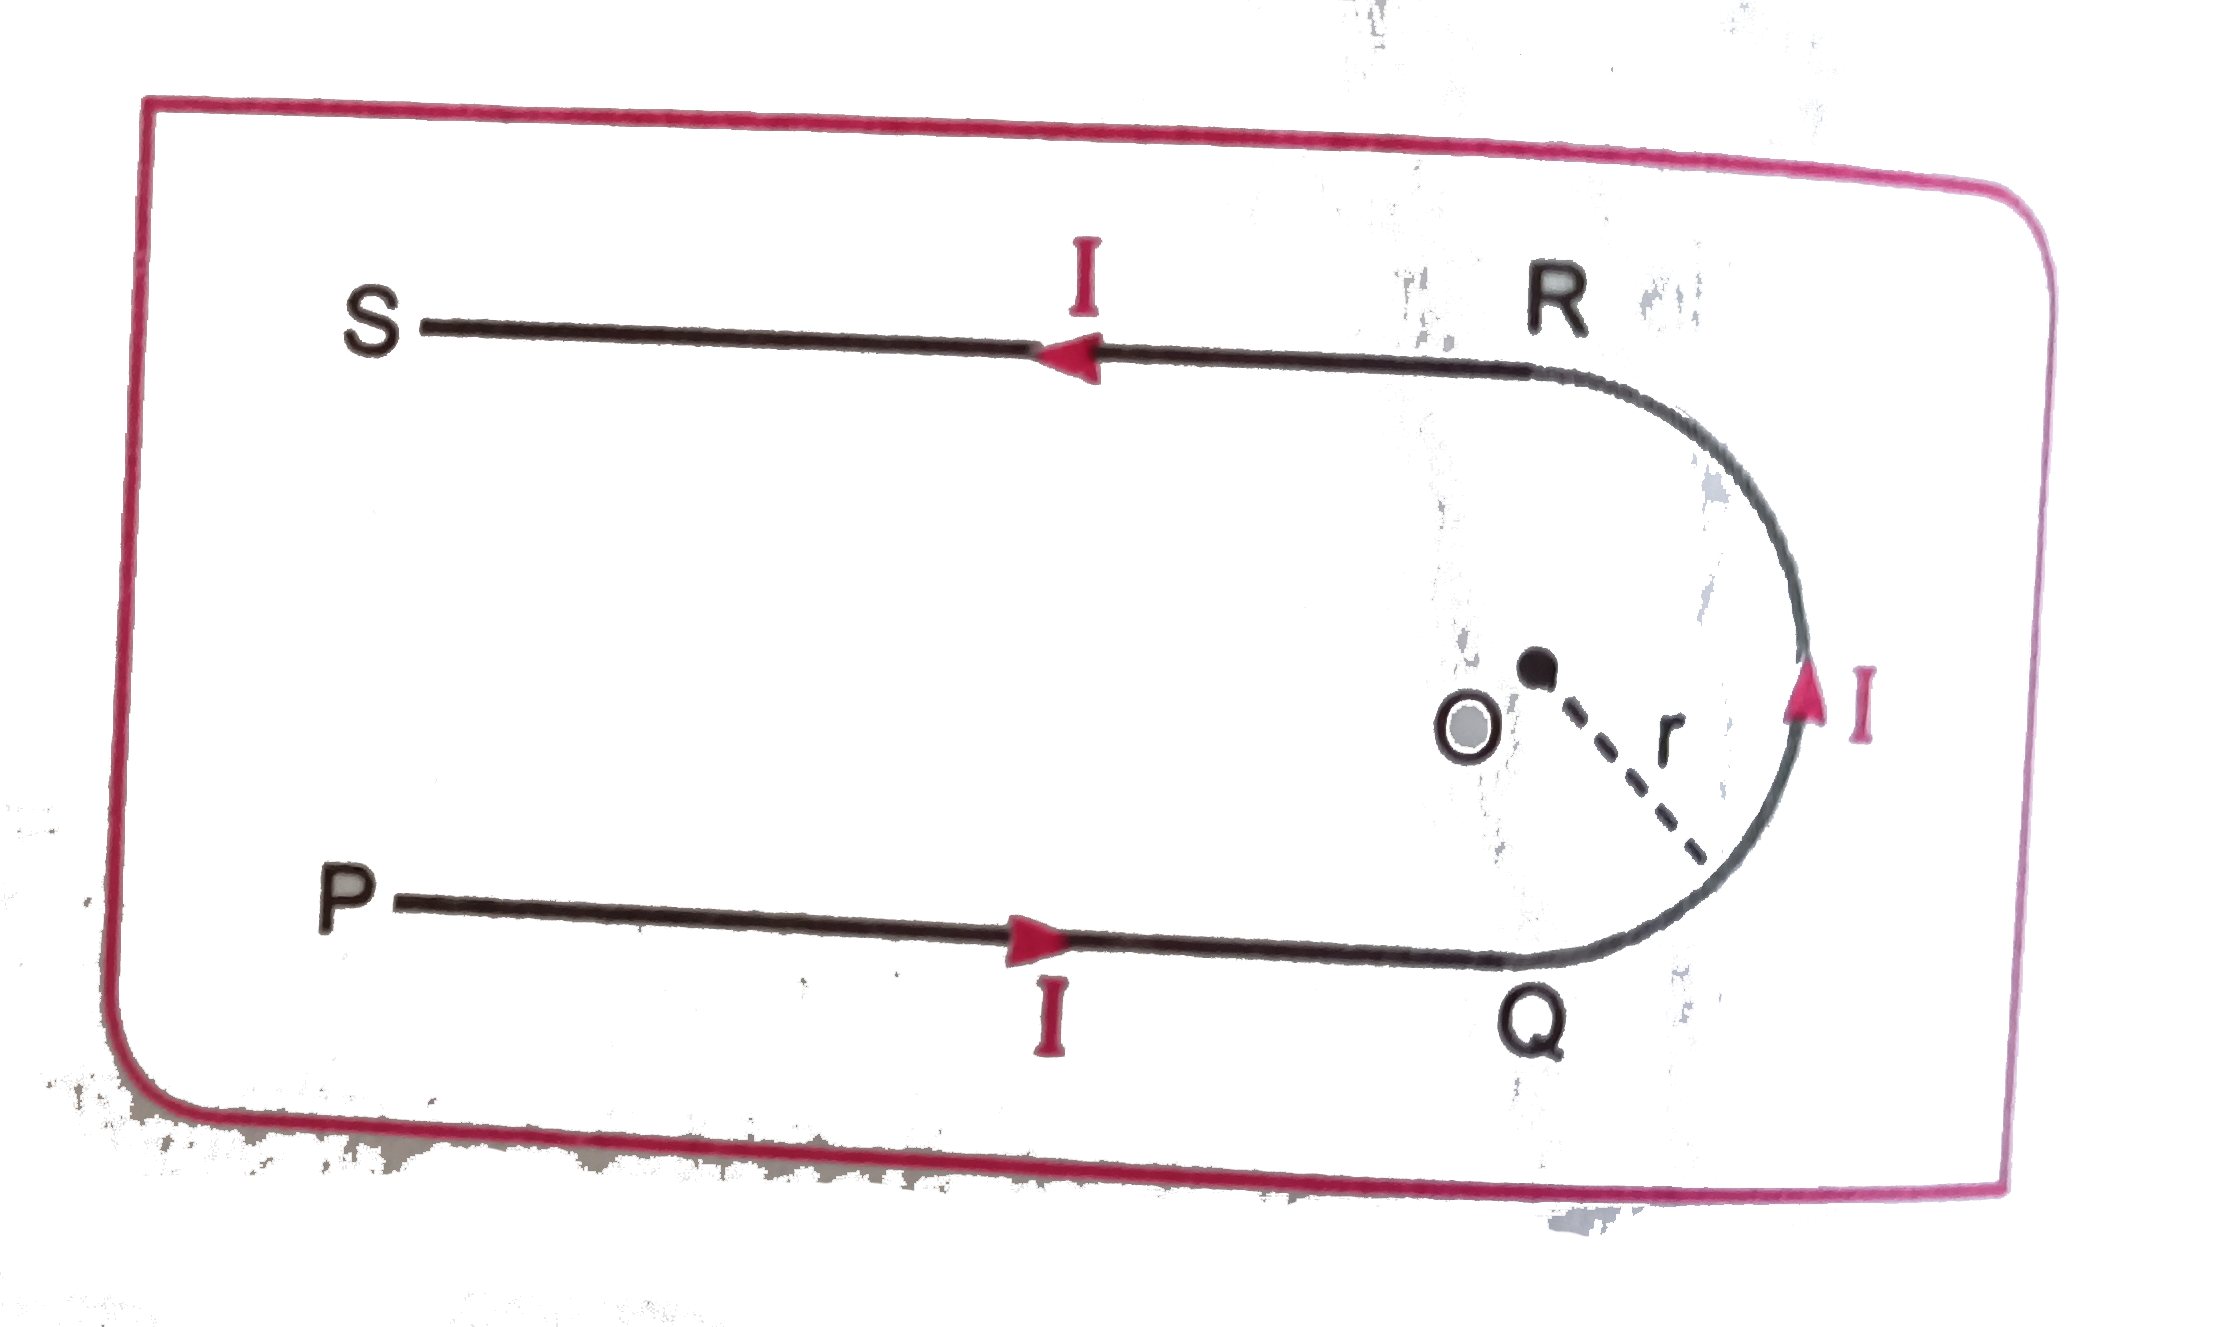 चित्र में U आकृत्ति का एक तार प्रदर्शित है जिसका वक्र भाग त्रिज्या 2 सेमी का अर्ध्दवृत है तथा सीधे भाग अनन्त लम्बाई के हैं । यदि तार में धारा 10 A बहायी जाती है तो अर्ध्दवृत्त के केंद्र पर चुम्बकीय क्षेत्र की तीव्रता ज्ञात कीजिए ।